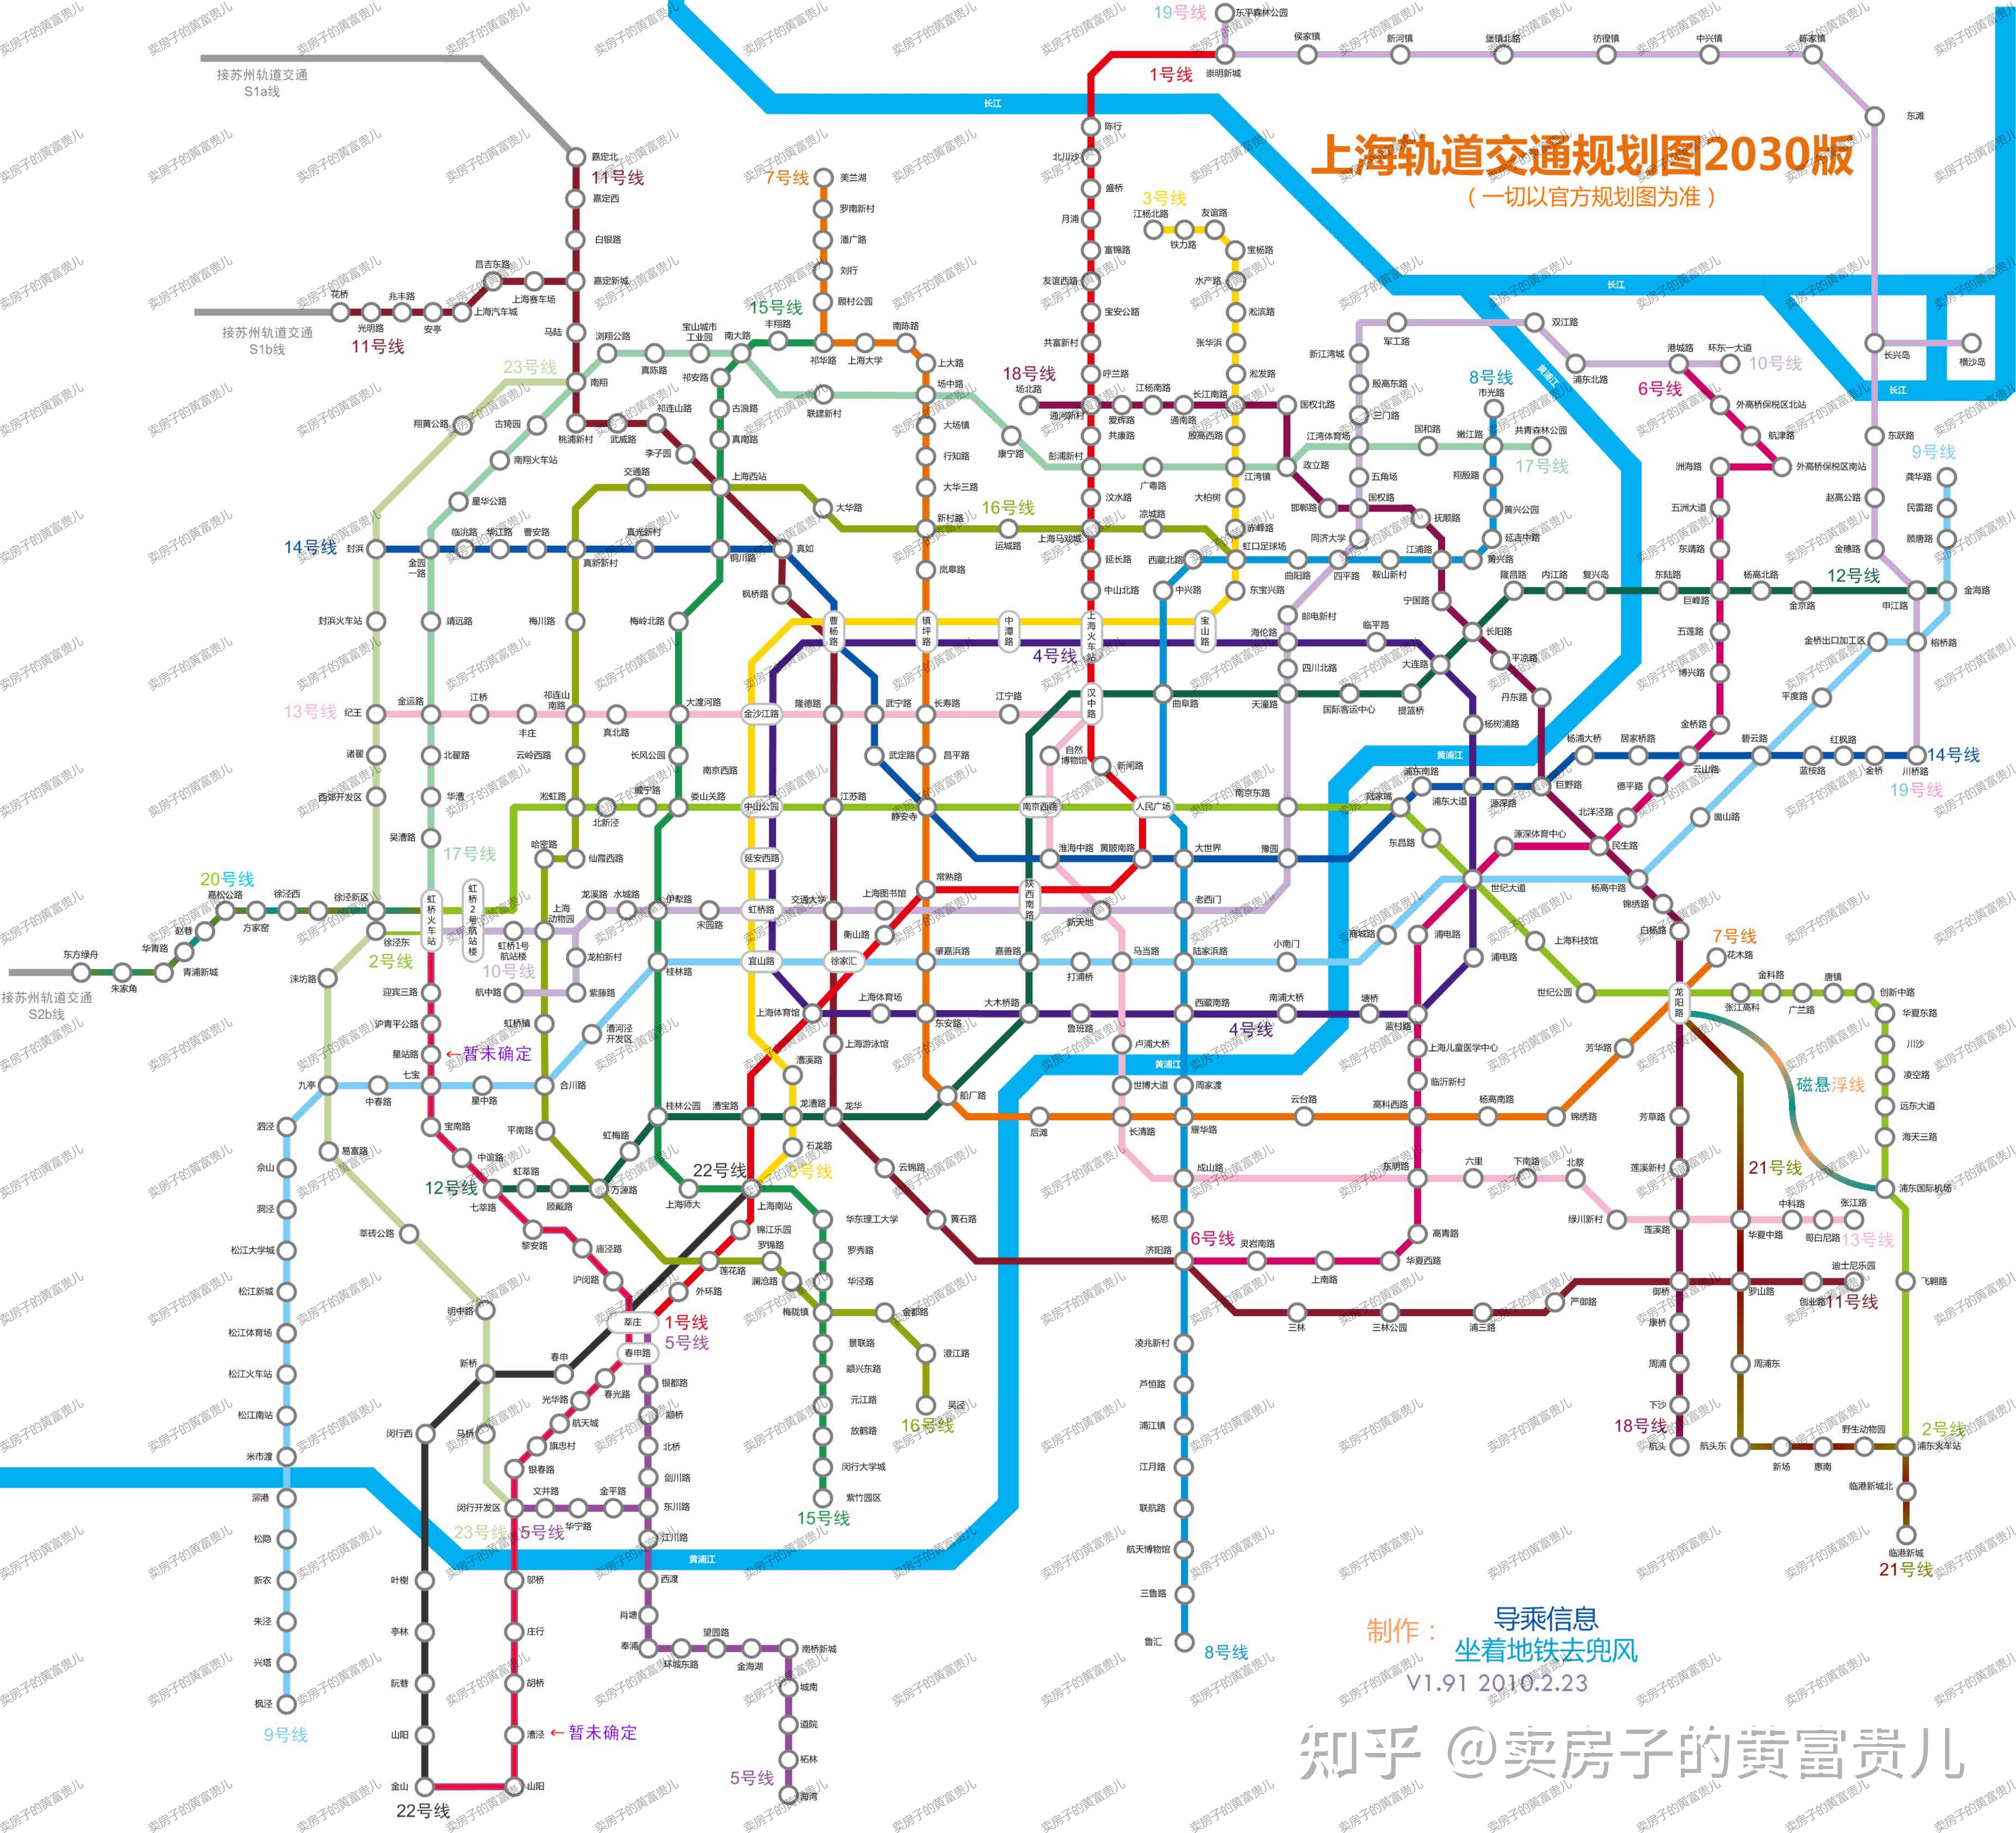 注:文末附送上海2030地铁规划图(高清) 